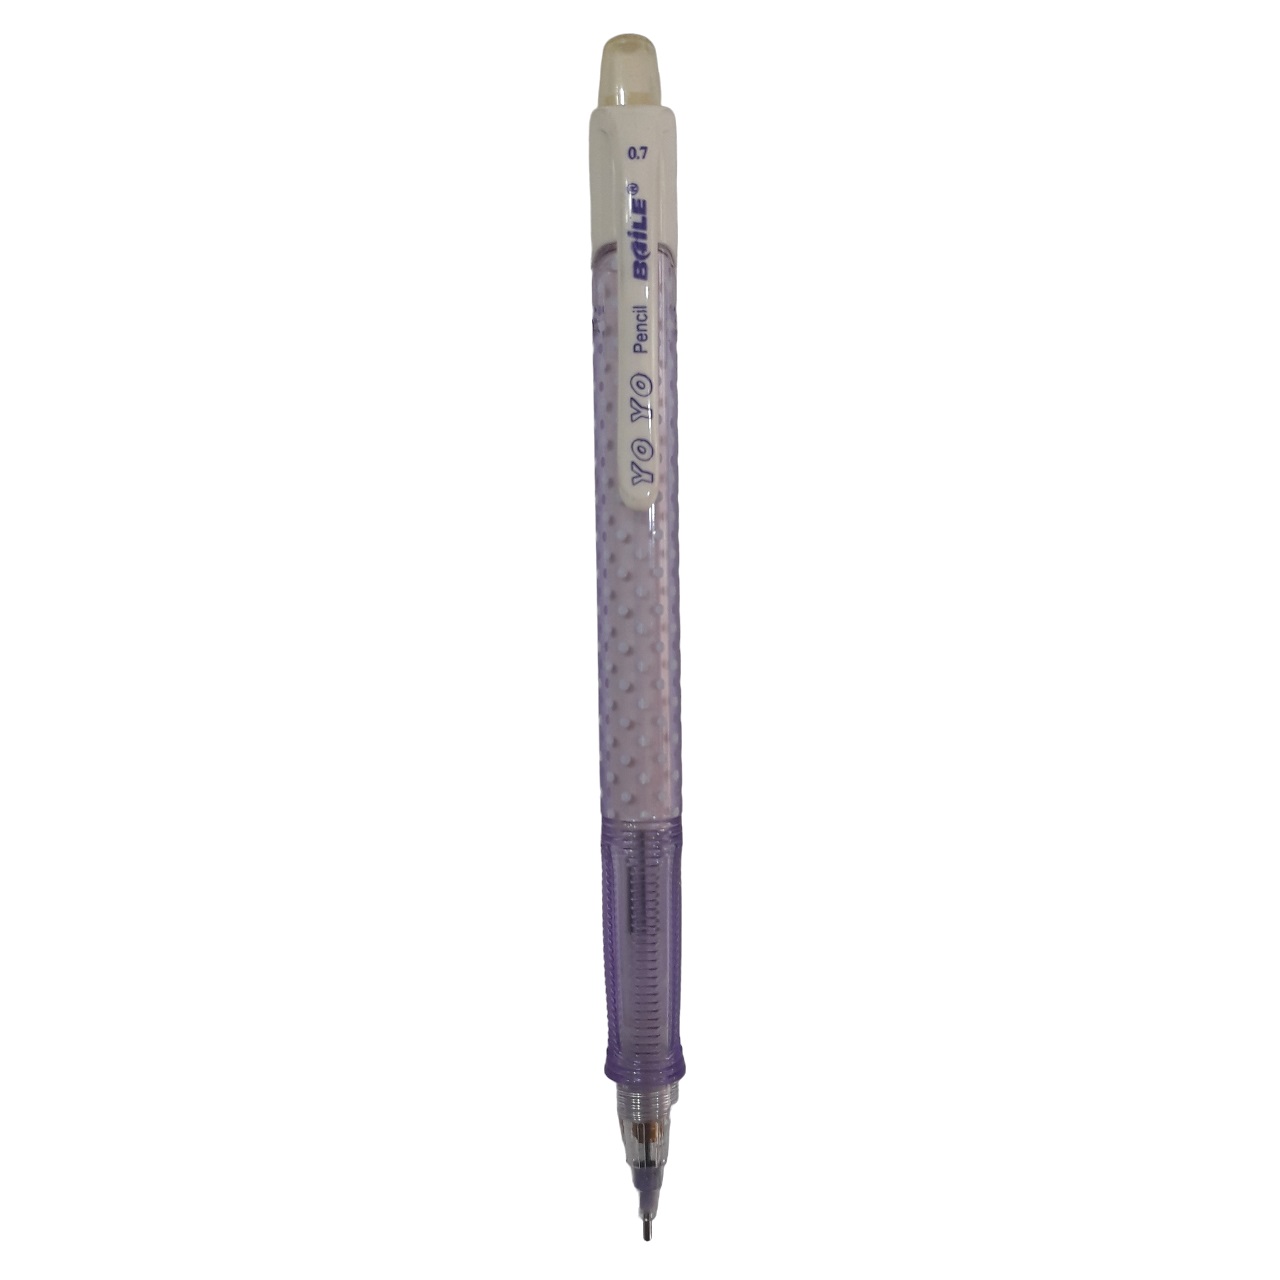 مداد نوکی 0.7 میلی متری بایلی مدل 0.7mm BL-221 کد 007 